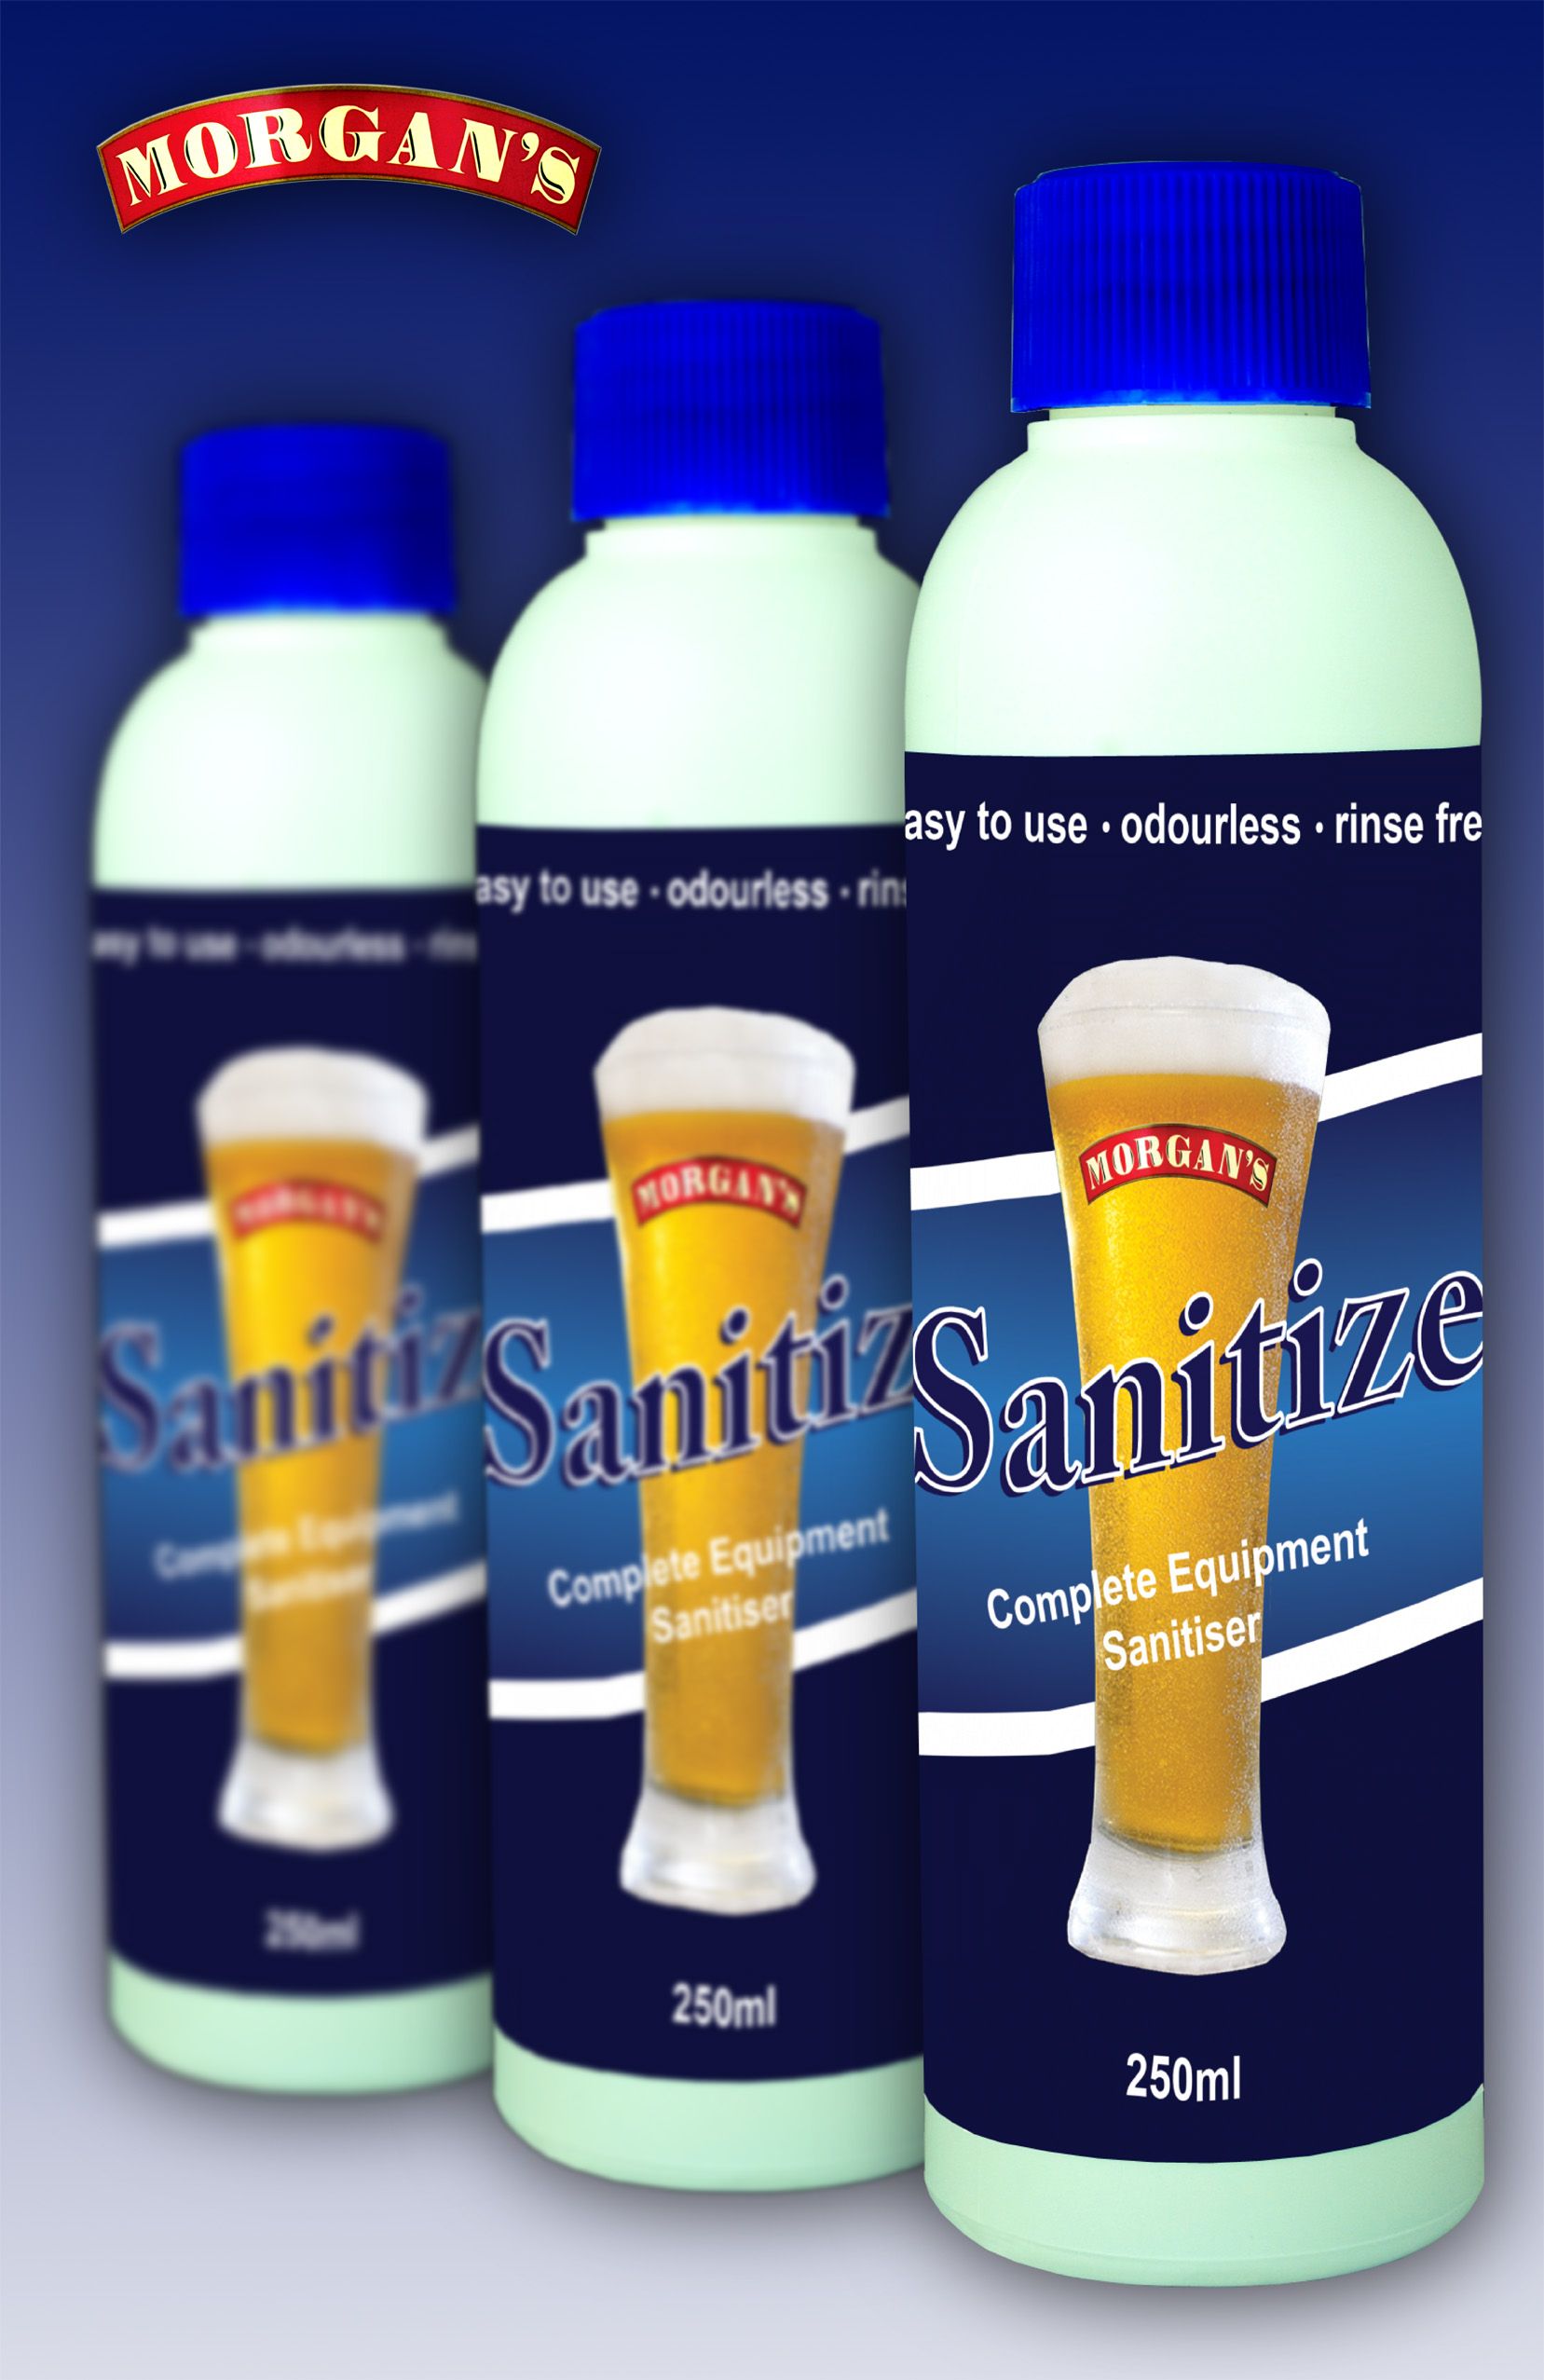 Morgan's Sanitize - Rinse Free Liquid Sanitiser 250ml